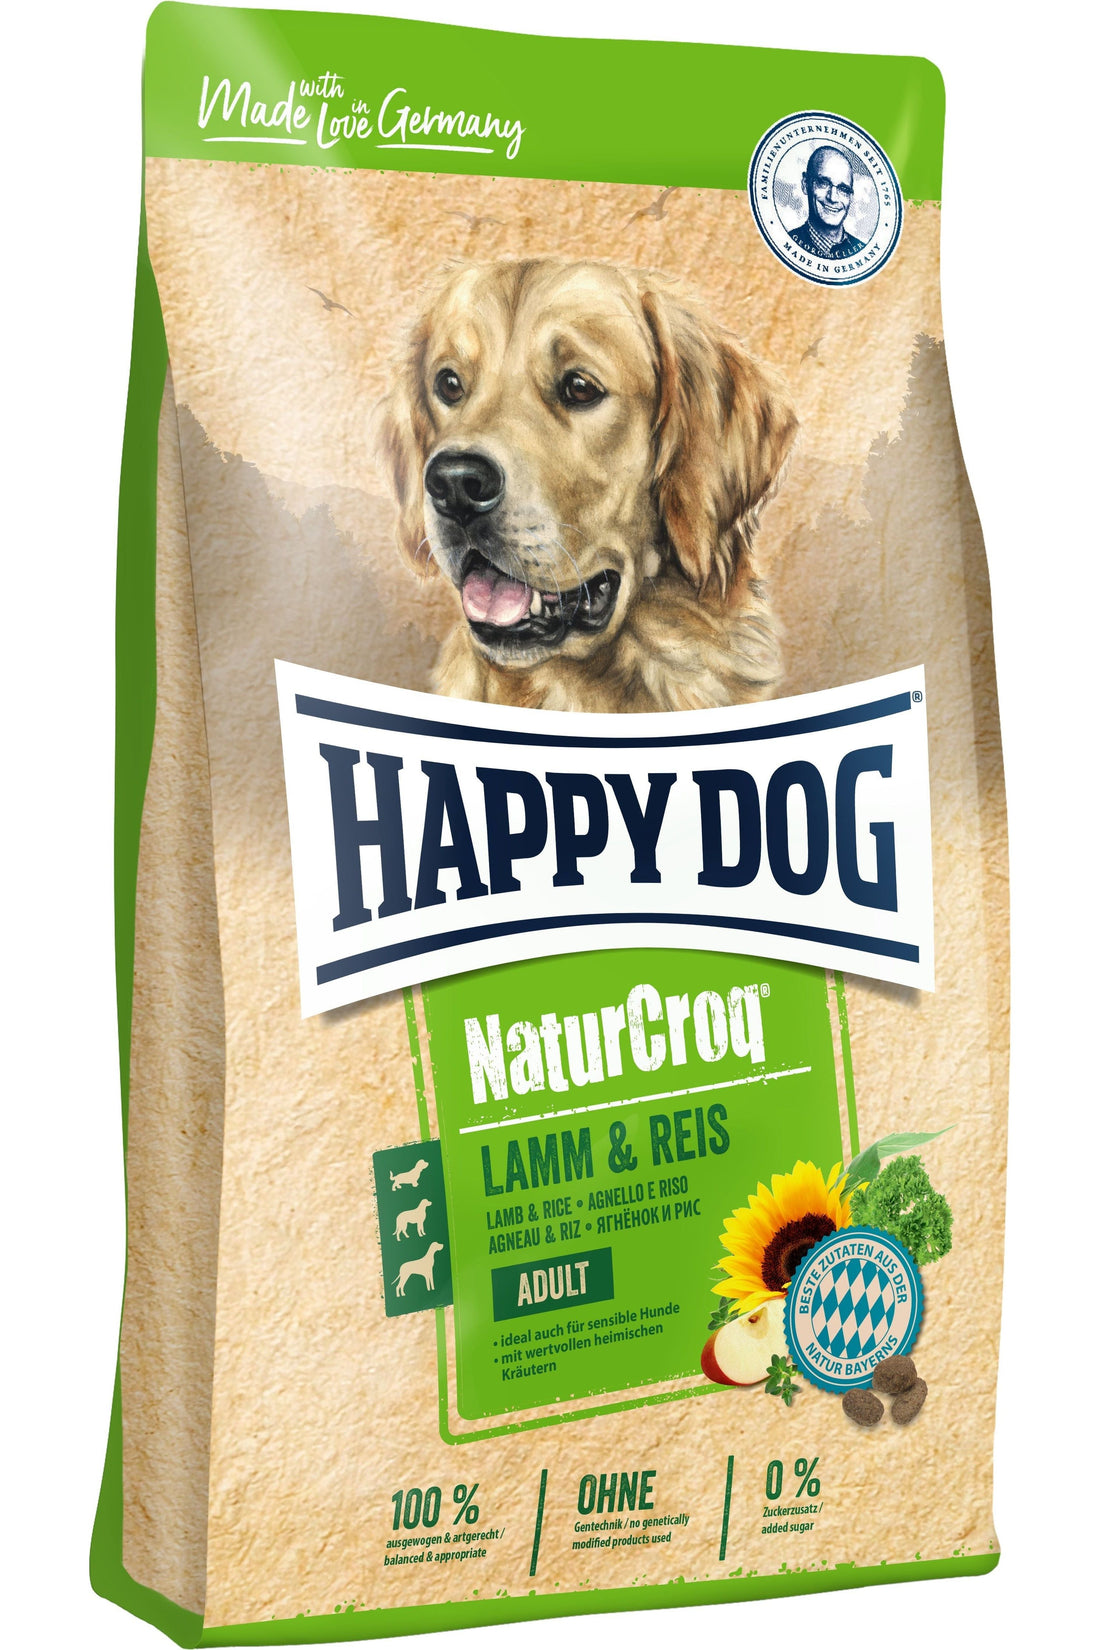 Happy Dog NaturCroq Lam og Ris - AV-Larsen